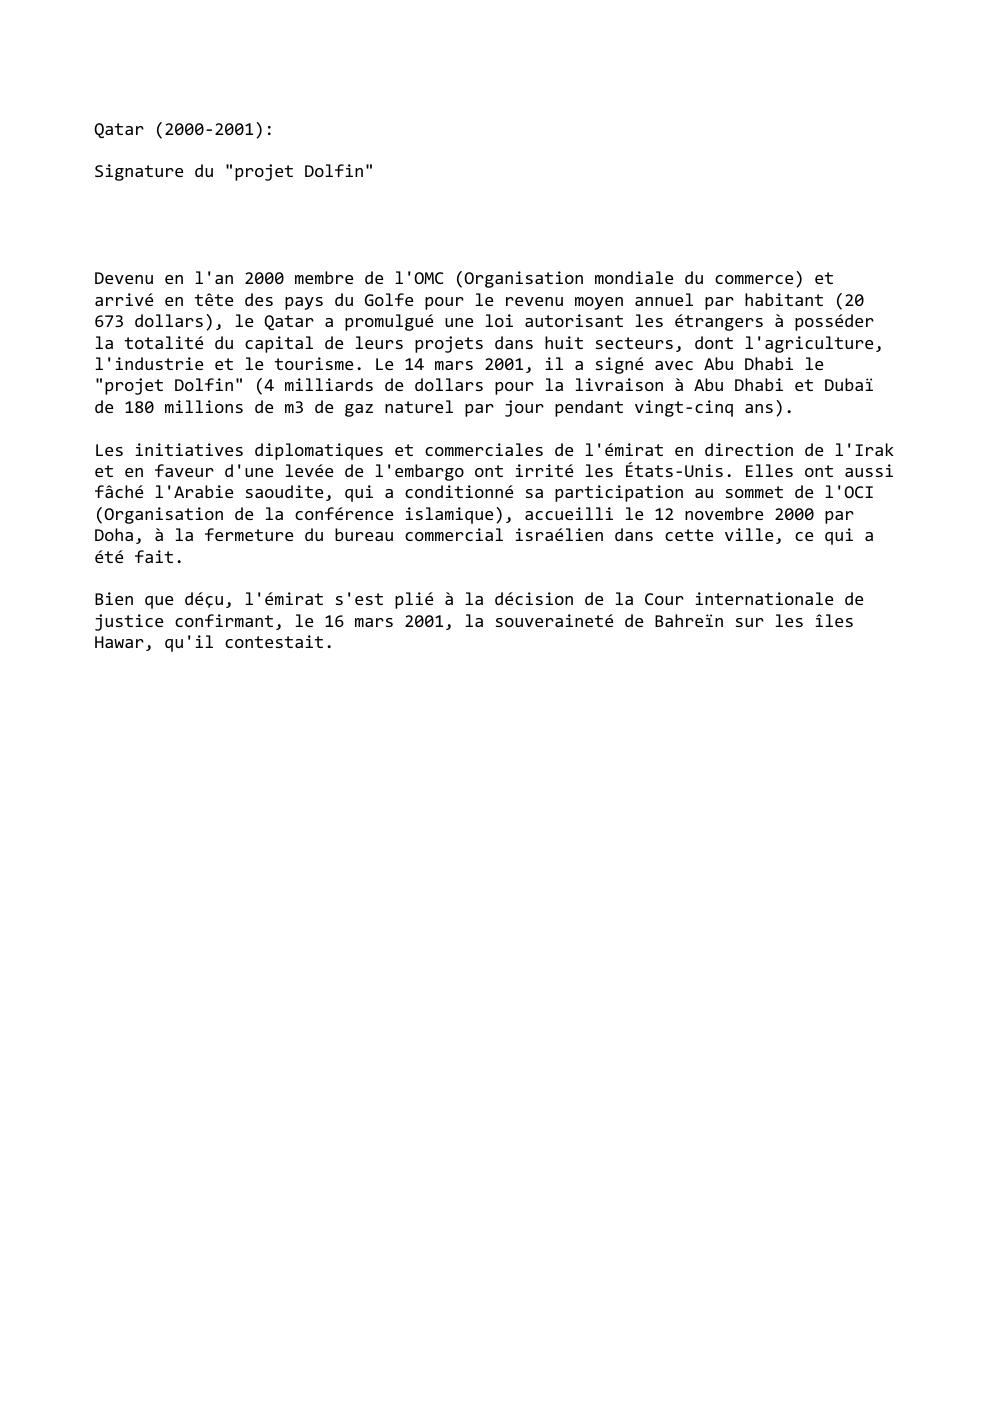 Prévisualisation du document Qatar (2000-2001):
Signature du "projet Dolfin"

Devenu en l'an 2000 membre de l'OMC (Organisation mondiale du commerce) et
arrivé en...